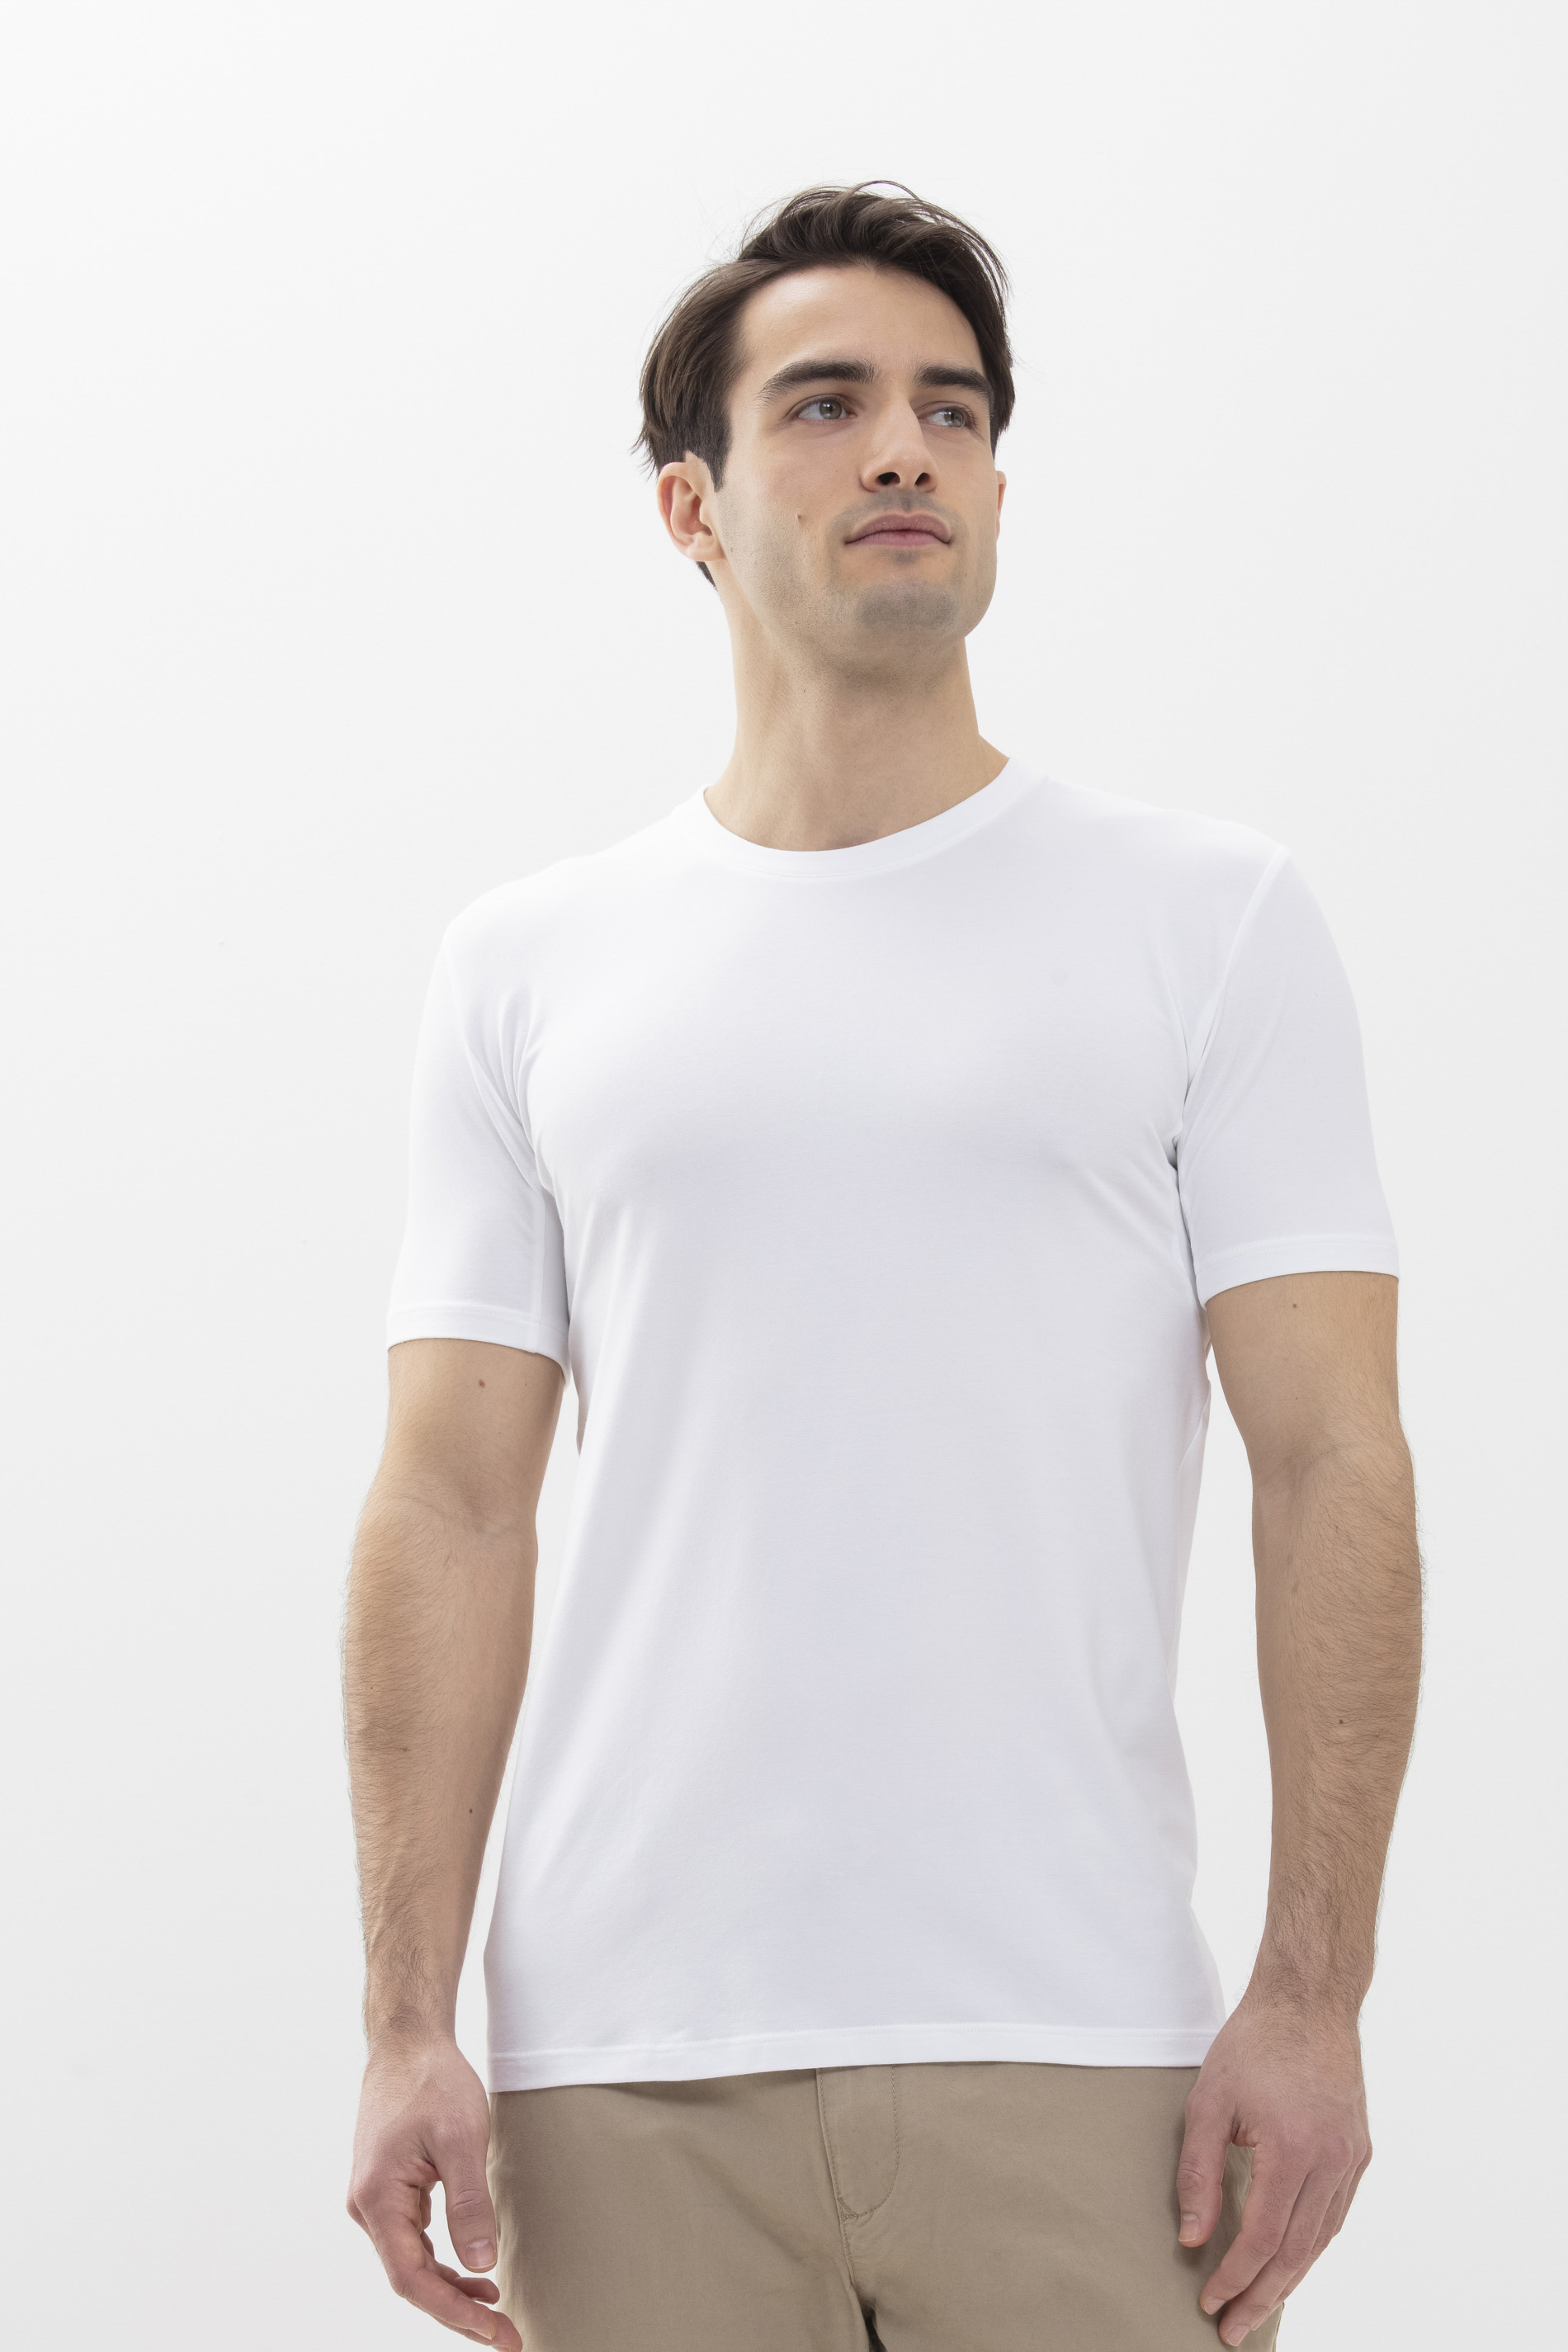 Hybride T-shirt Wit Serie Hybrid T-Shirt Festlegen | mey®